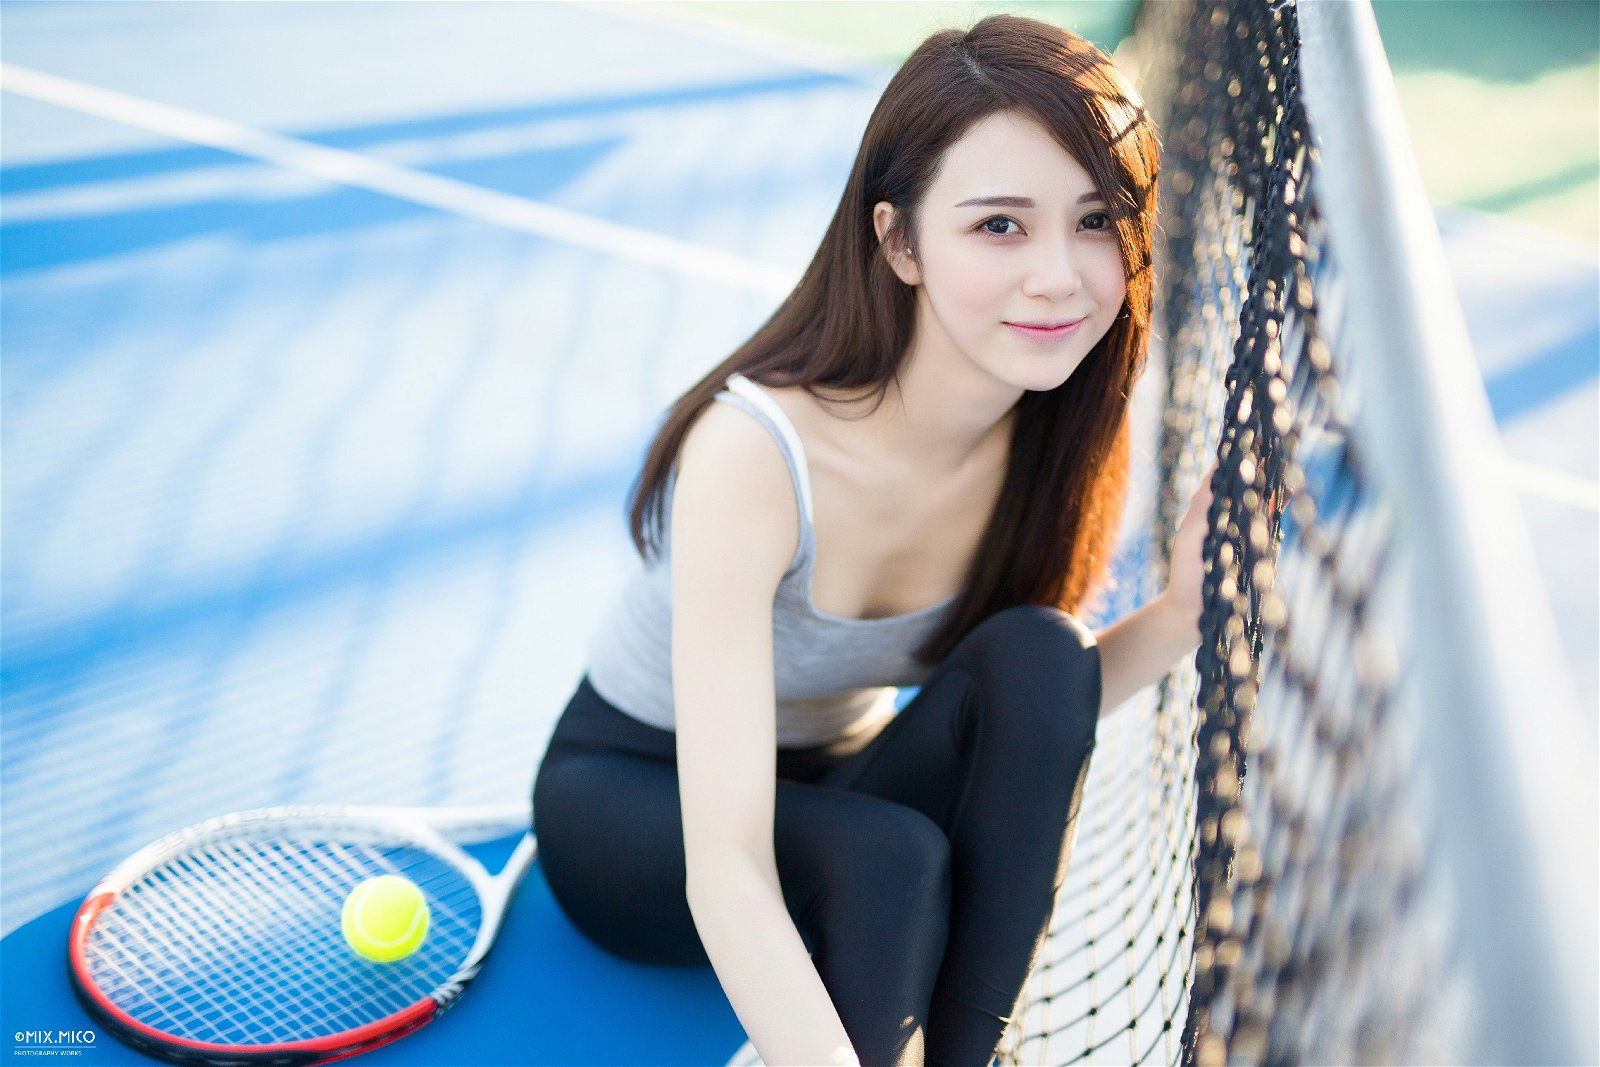 004-tennis-girl (25).jpg